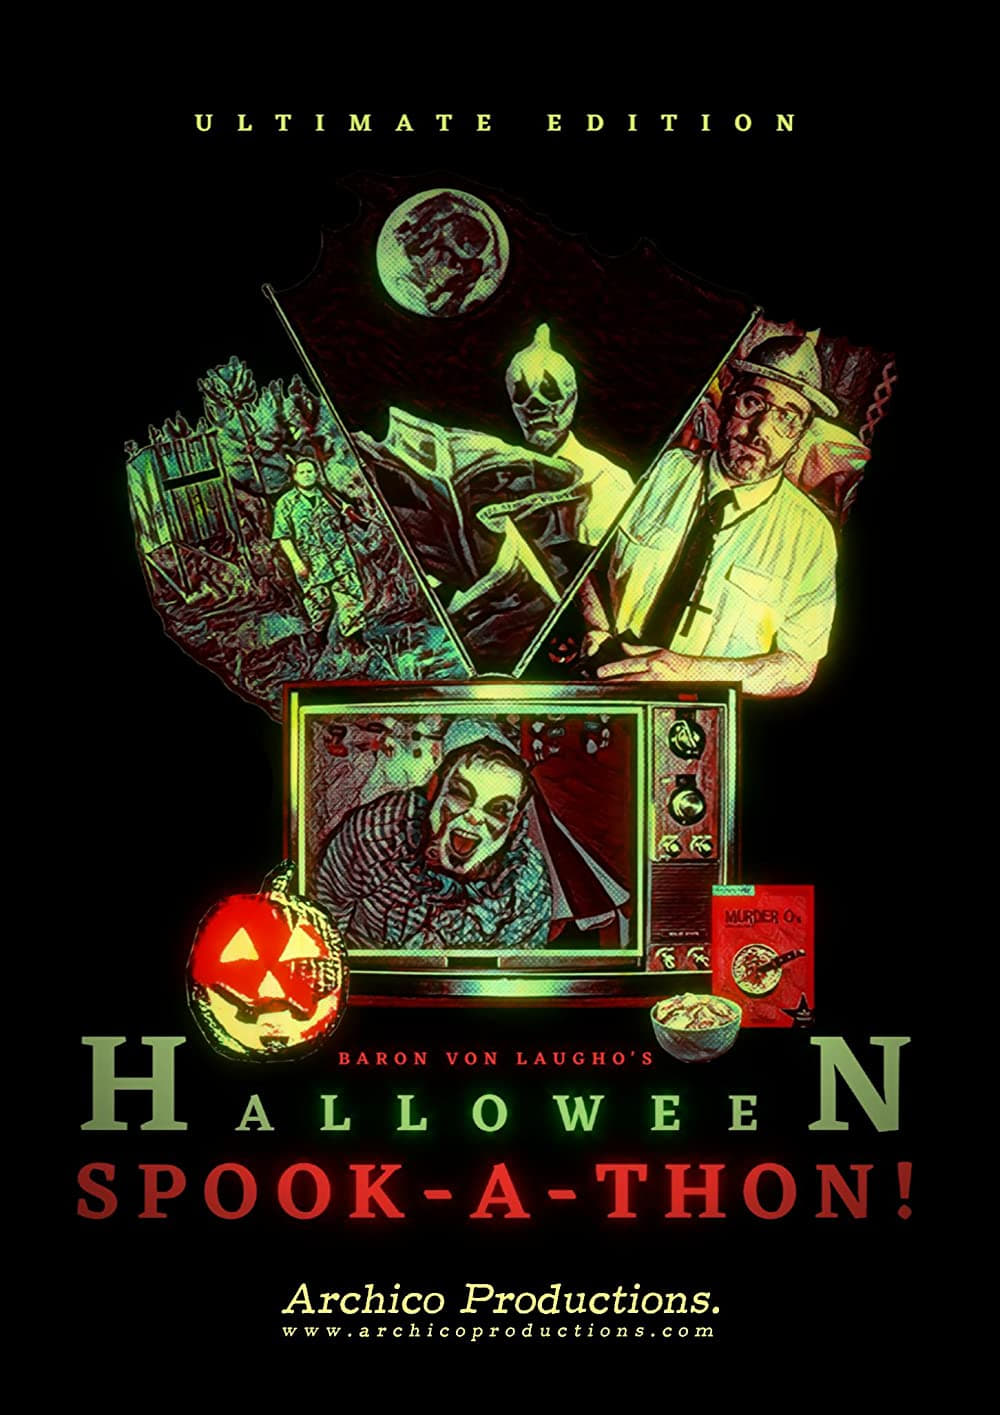 Baron Von Laugho's Halloween Spook-A-Thon!